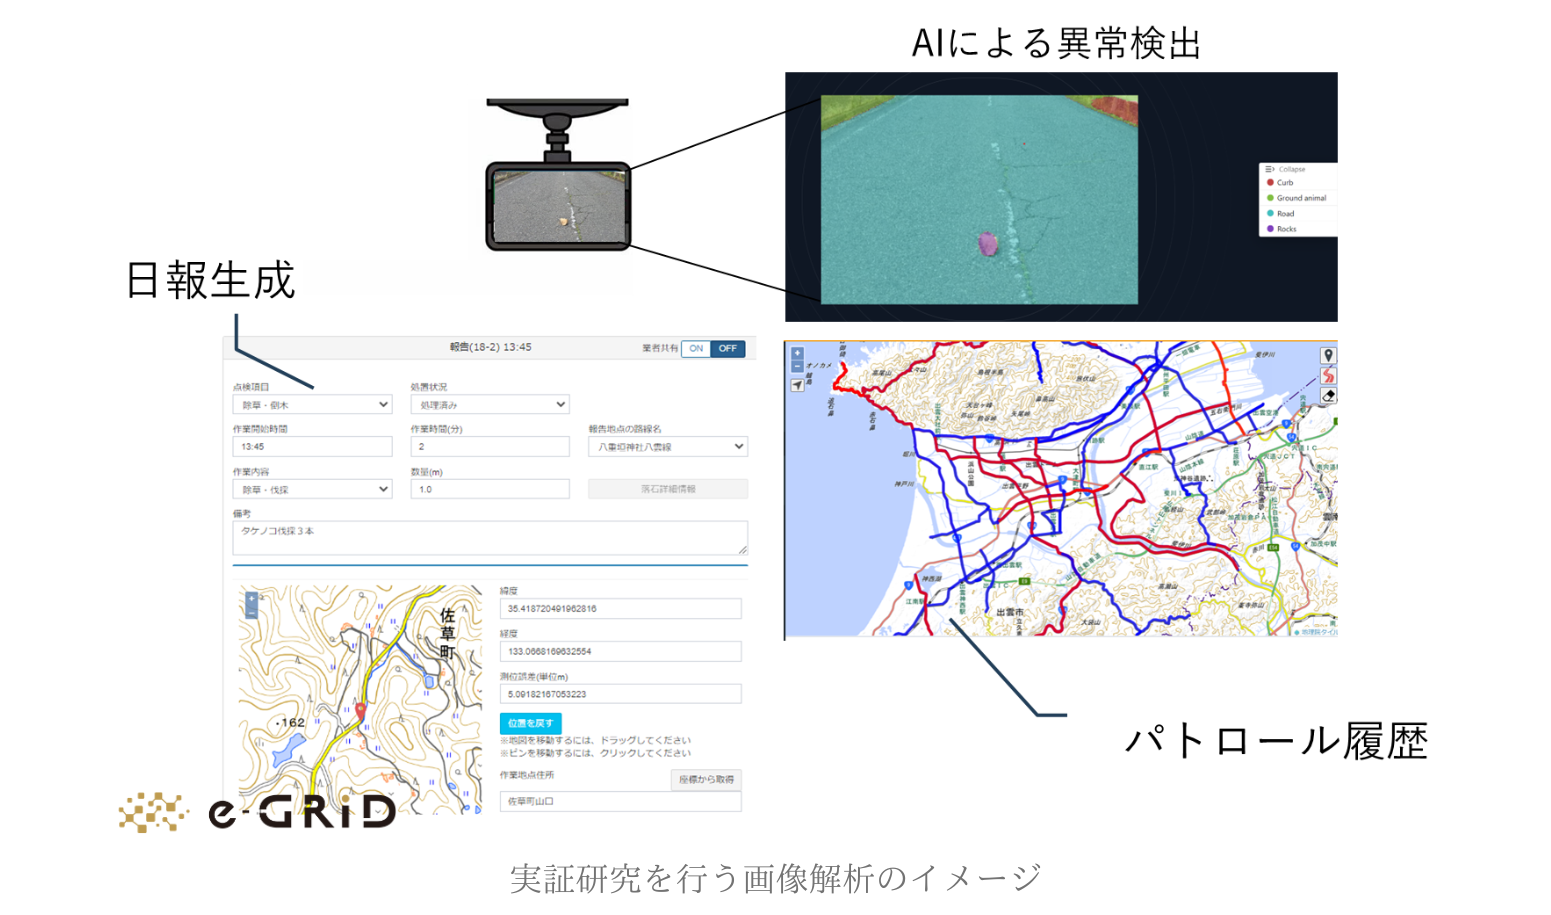 島根県出雲市、AI画像解析で道路パトロール効率化へ実証実験開始[ニュース]